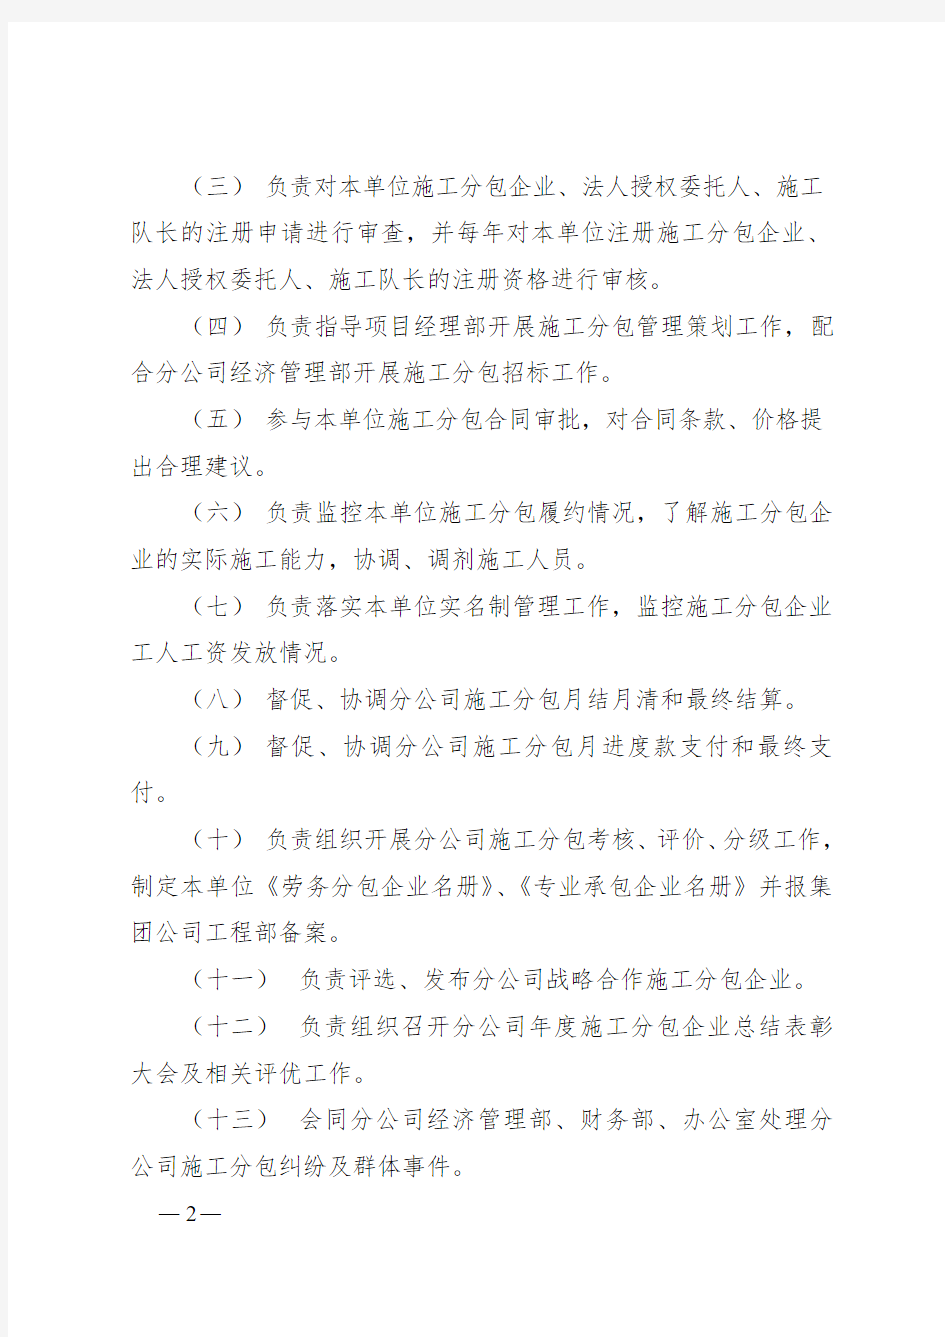 中铁建设集团有限公司华北分公司施工分包管理办法(最终版)